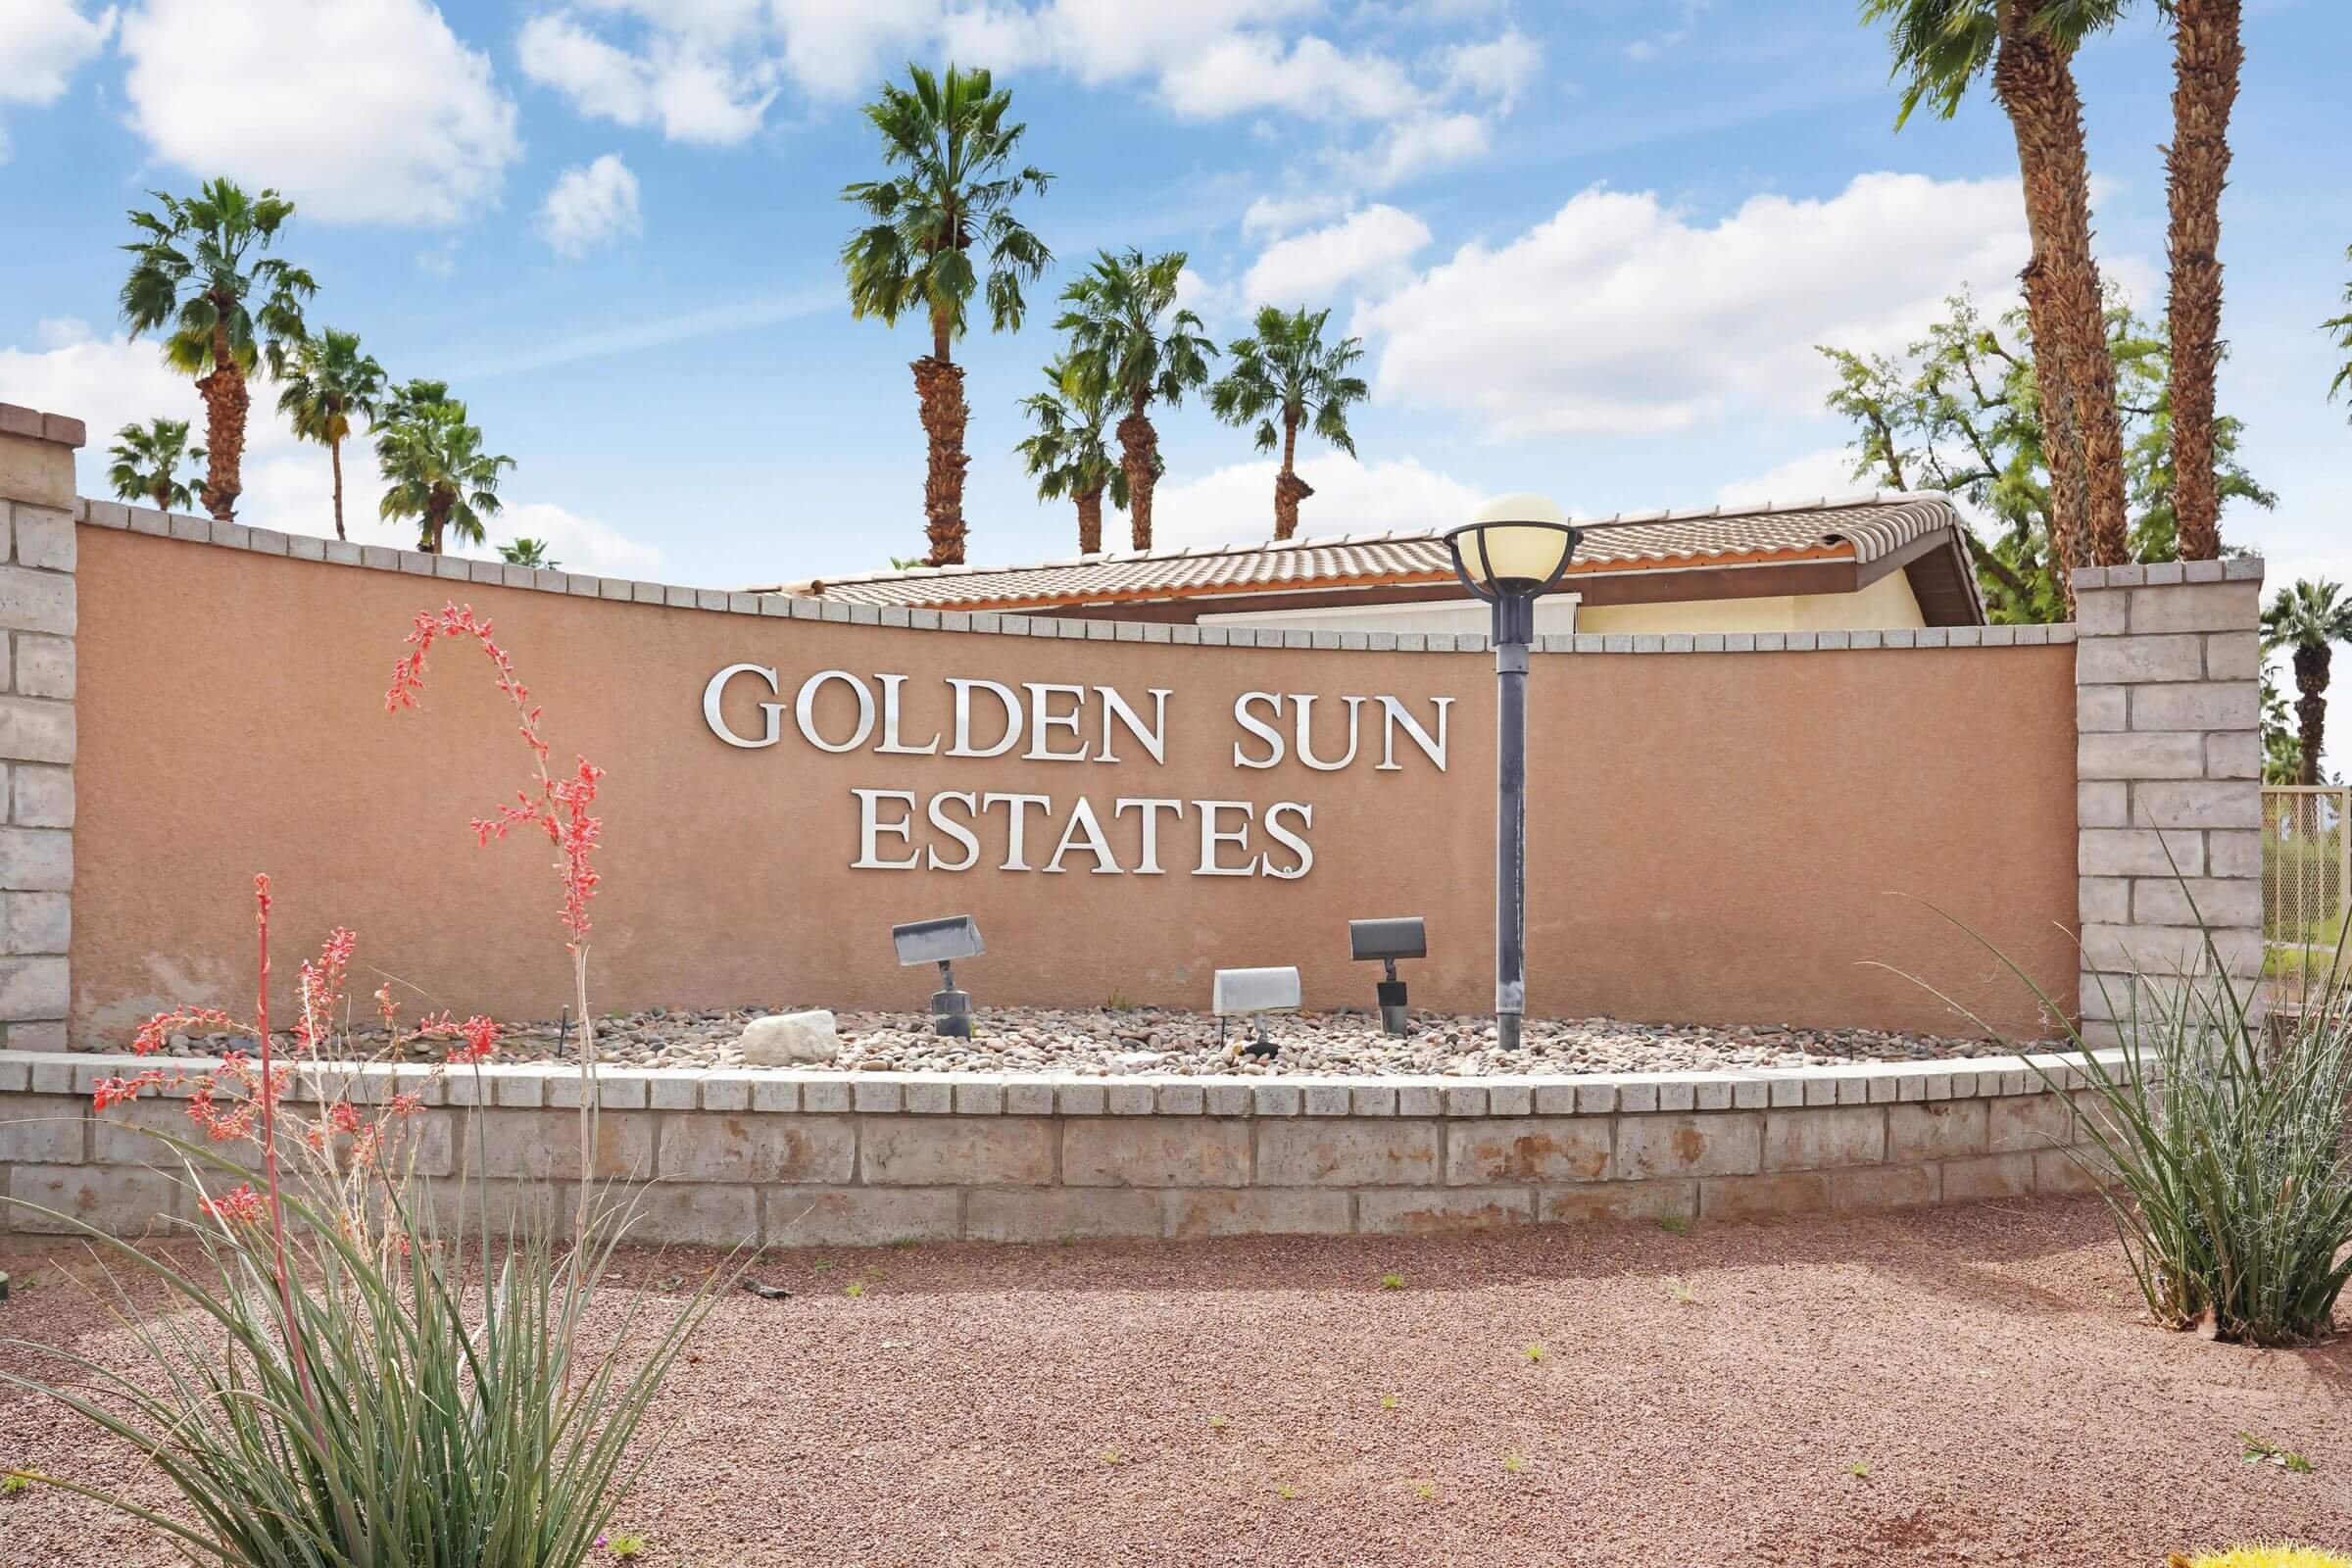 Golden Sun Estates Photo Gallery